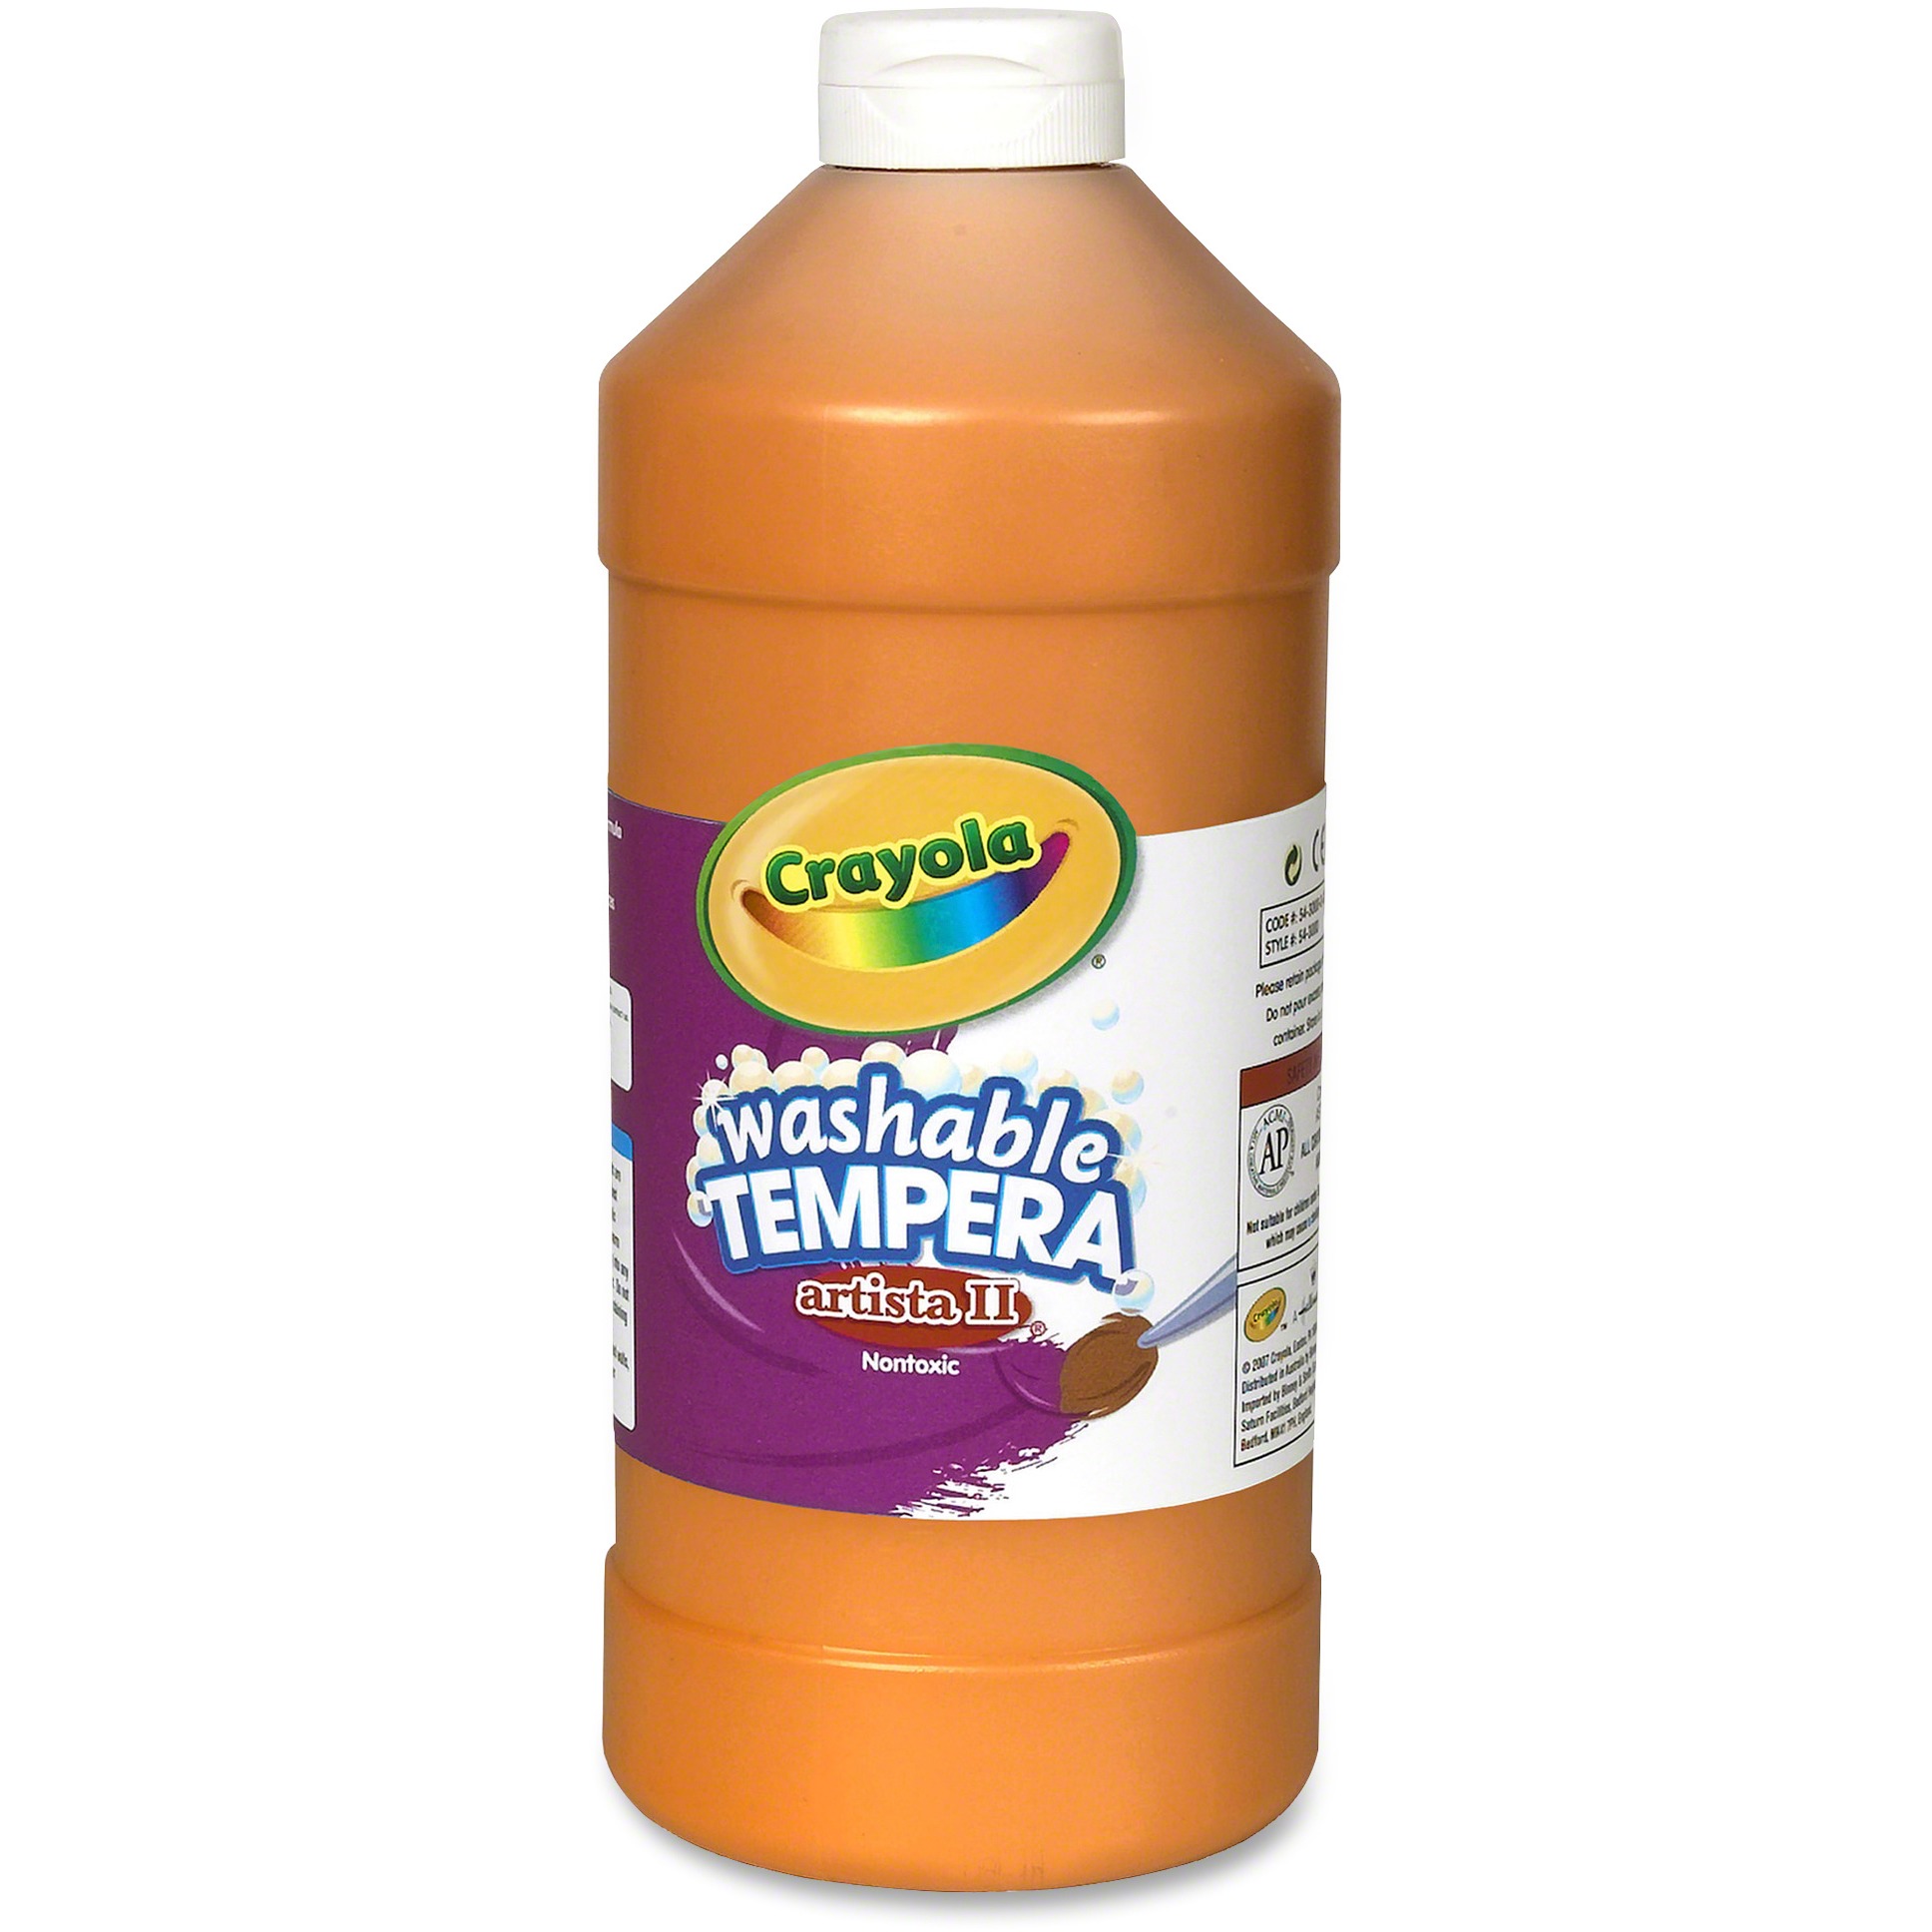 Crayola Orange Washable Tempera Paint, 32 Ounce Squeeze Bottle - image 1 of 8